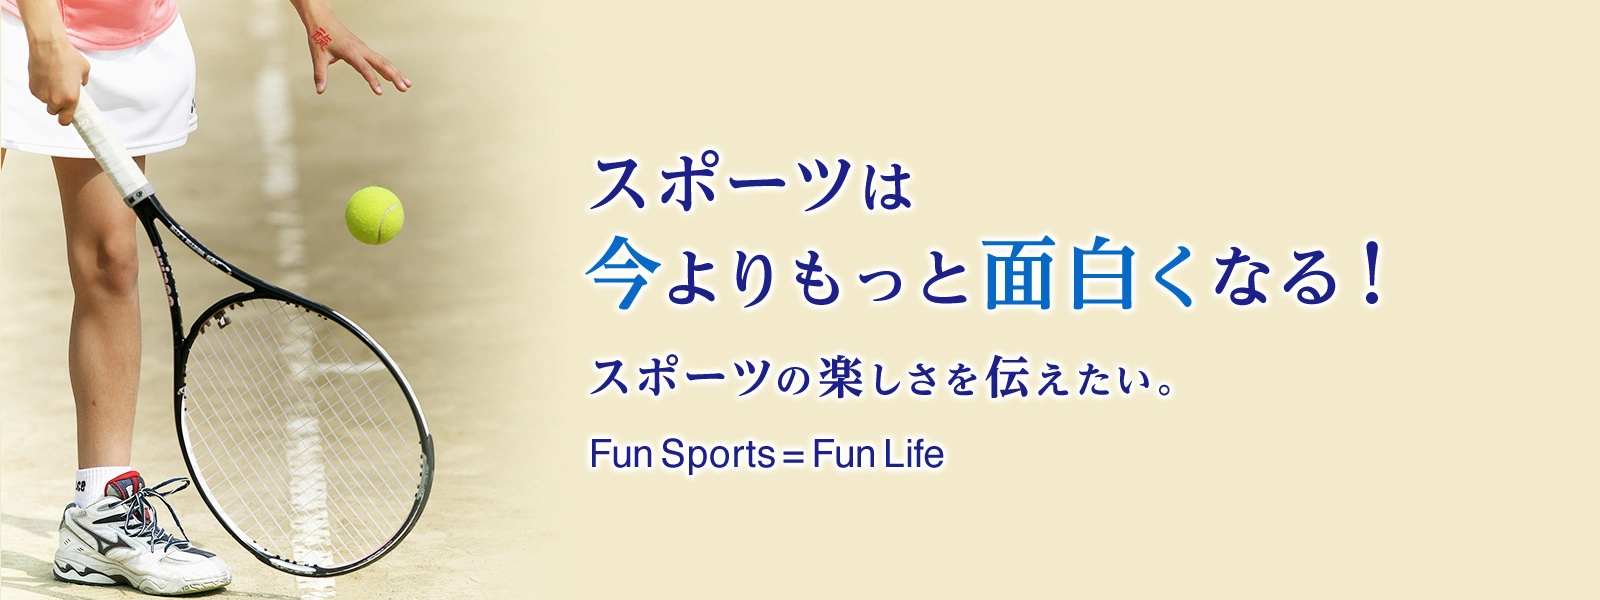 スポーツは今よりもっと面白くなる！スポーツの楽しさを伝えたい。Fun Sports = Fun Life